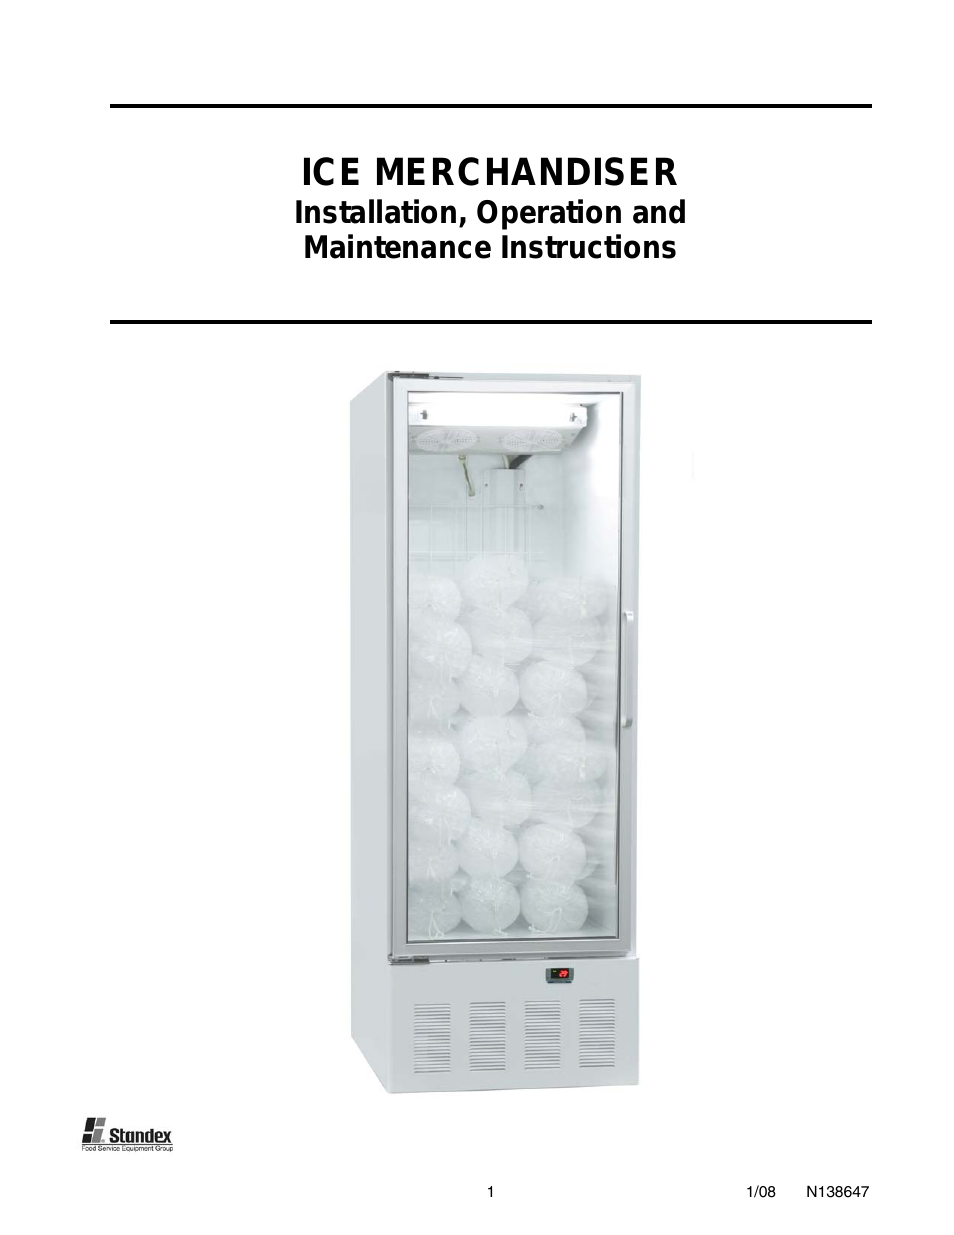 Stundex Ice Merchandiser